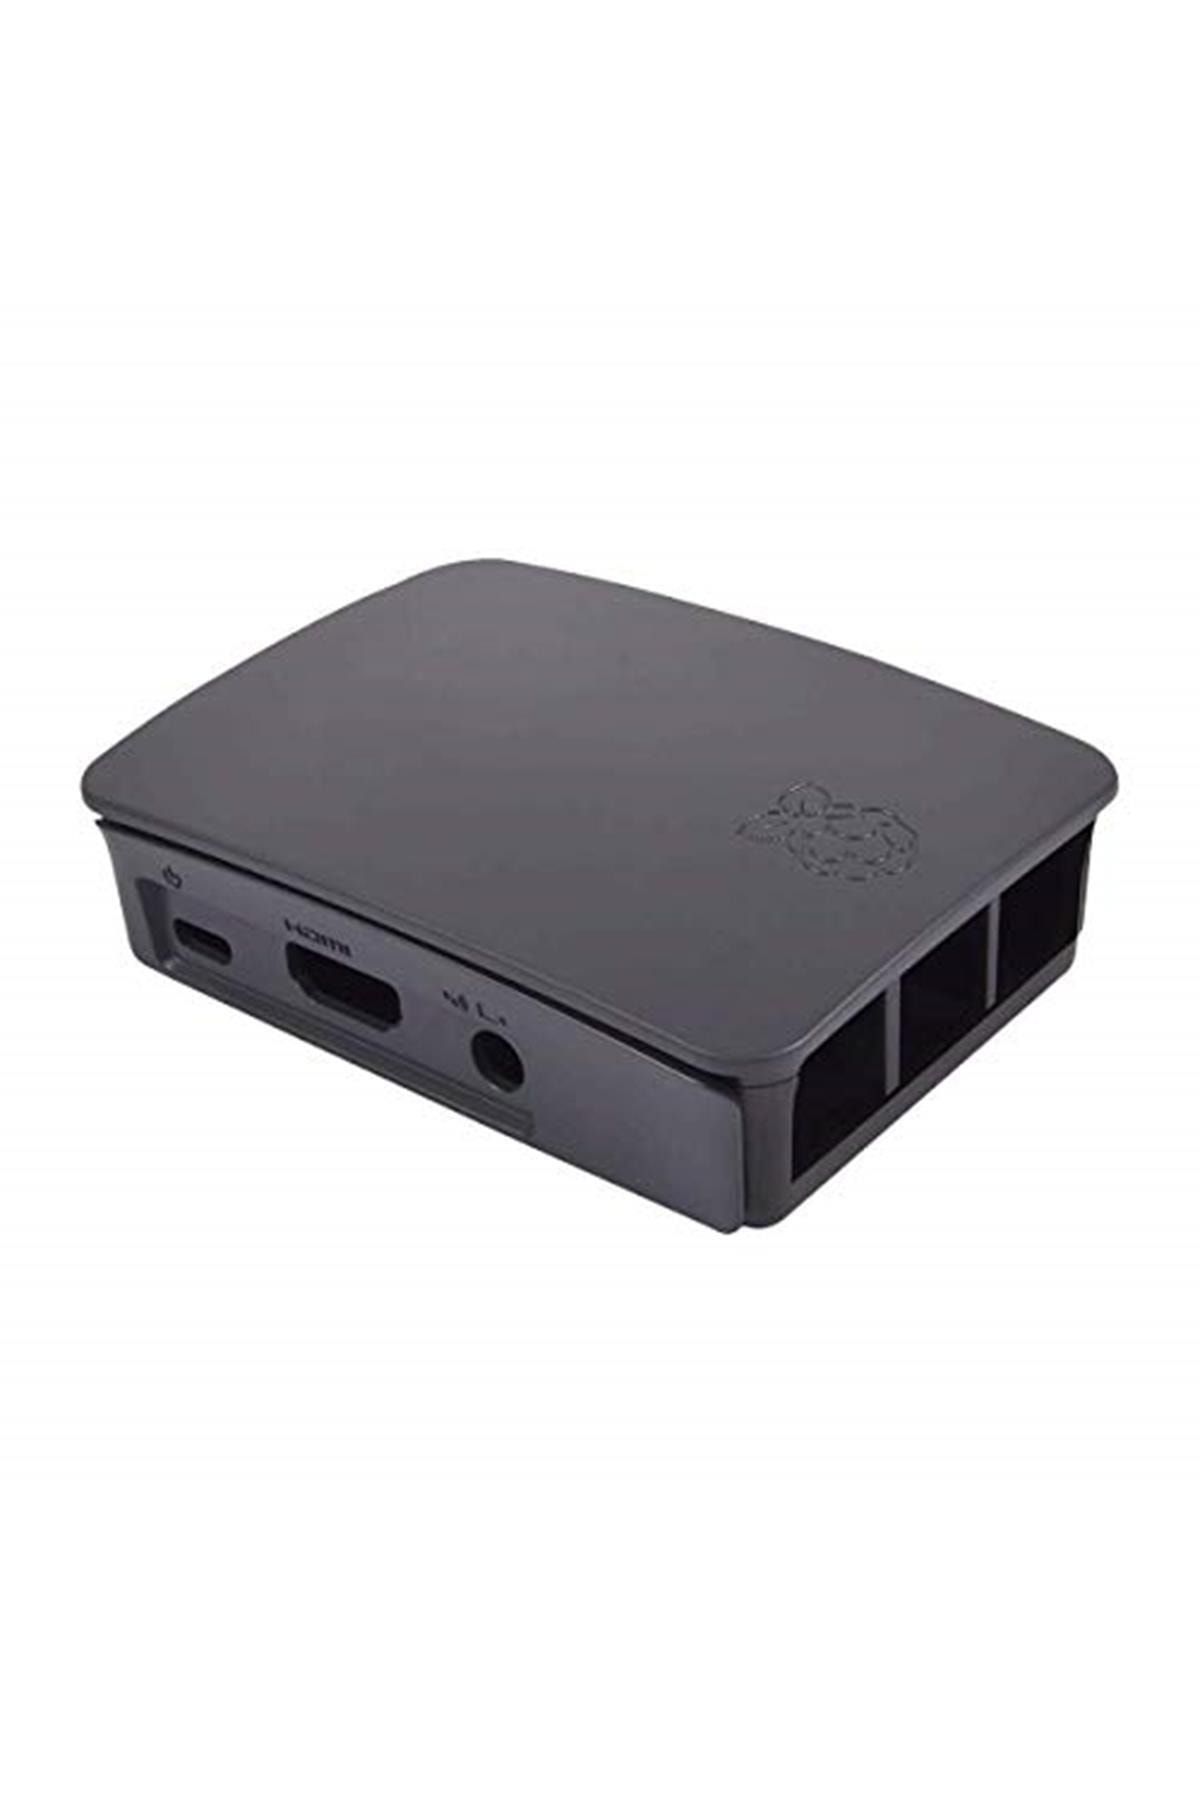 Raspberry Pi 3 Lisanslı Kutu - Siyah